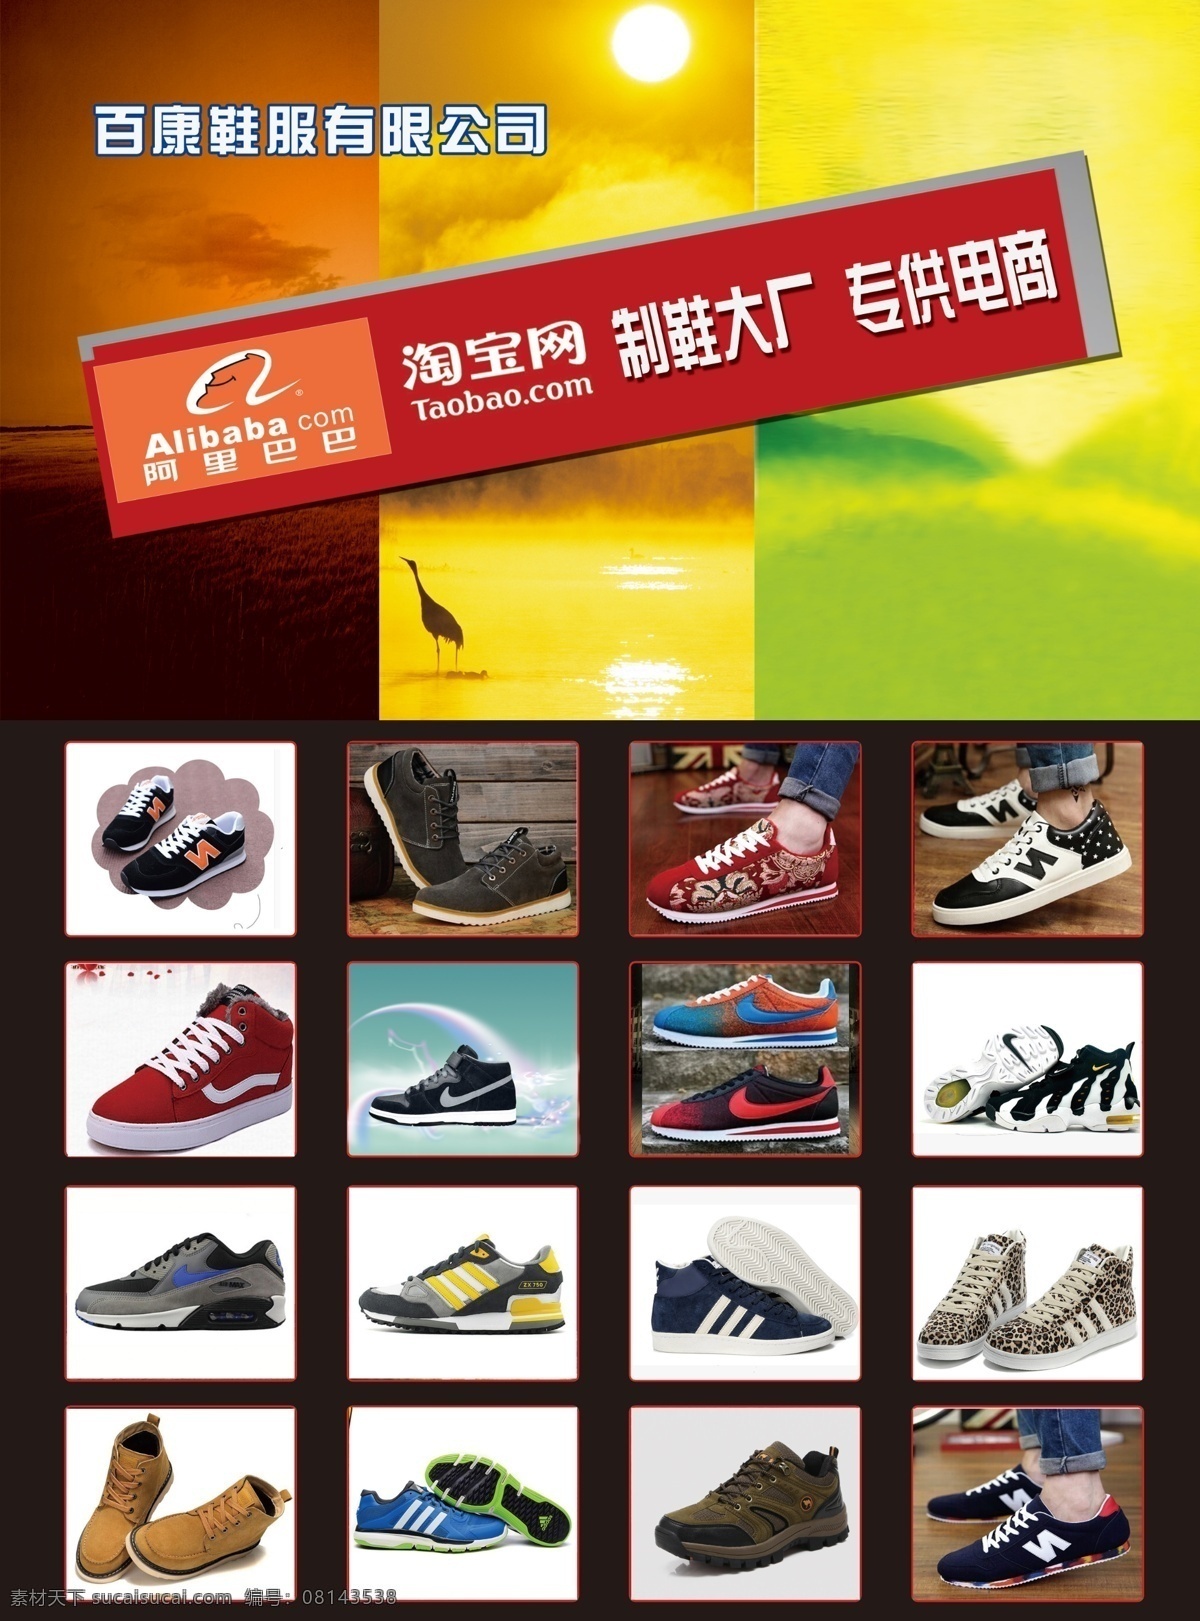 鞋电商彩页 鞋类广告 鞋 鞋厂 图片彩页 电商 电商彩页 鞋宣传